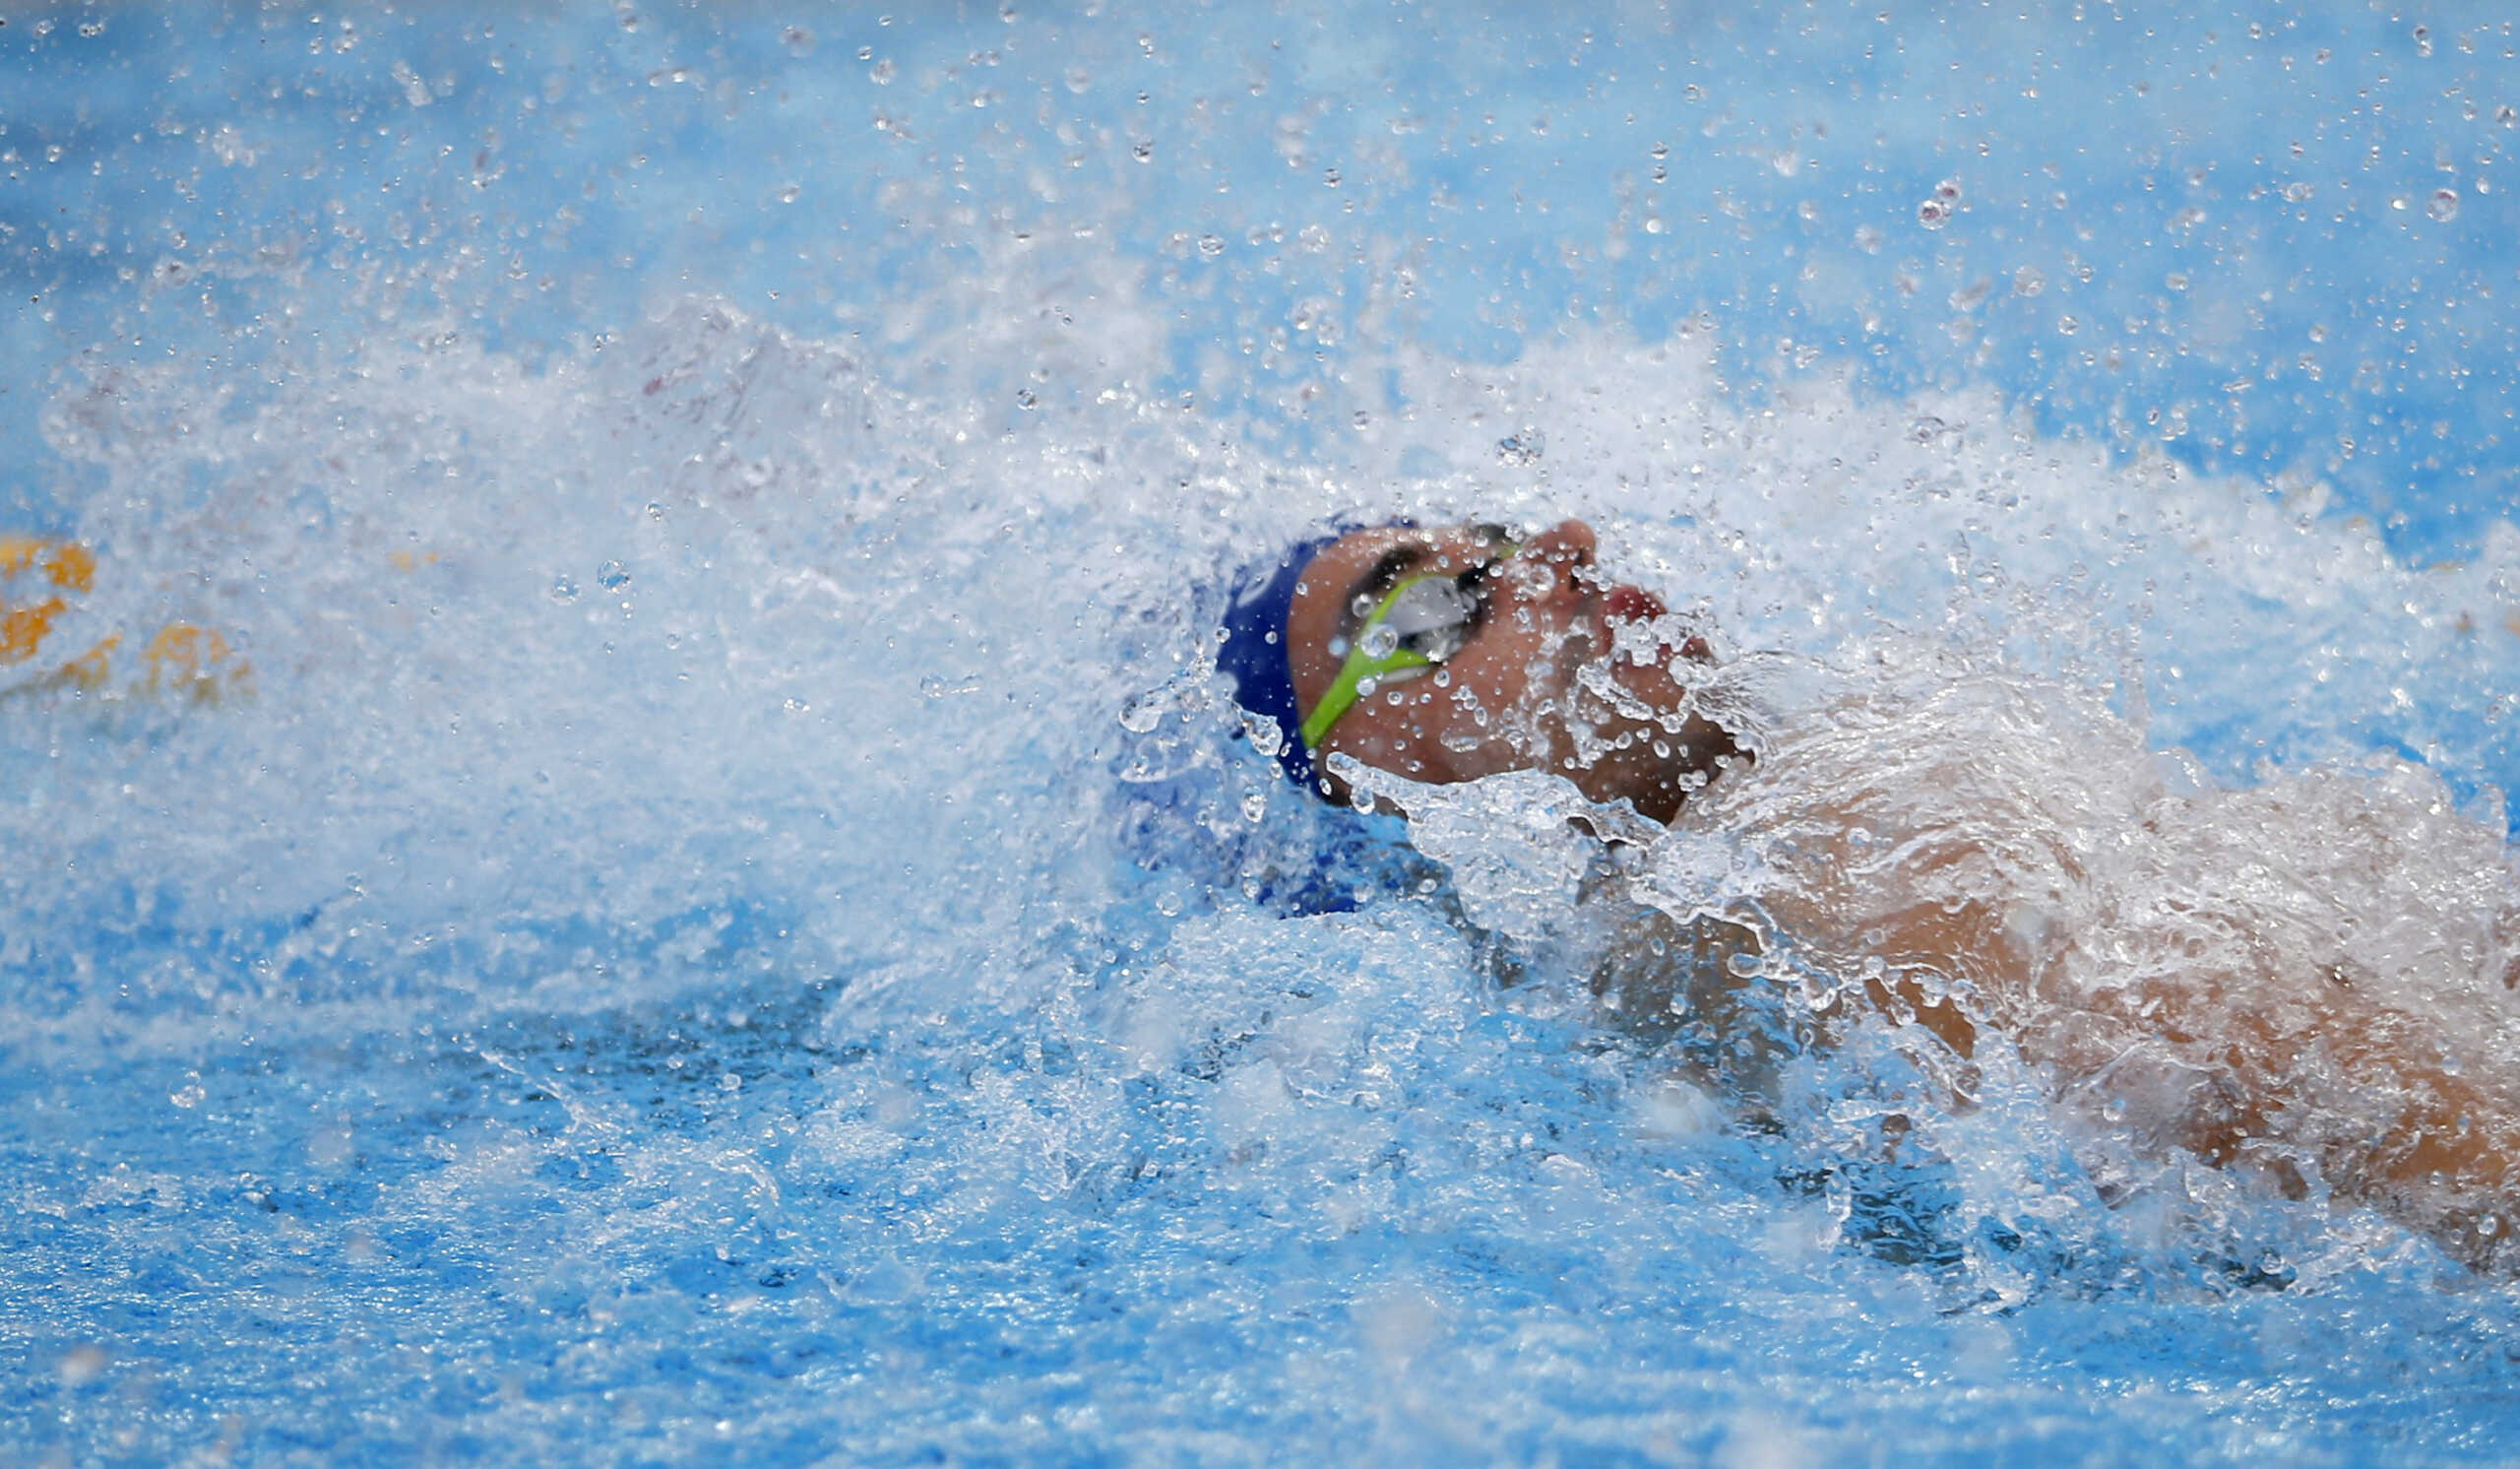 Χάλκινο μετάλλιο για την Ελλάδα στα 4X100 μέτρα ελεύθερο στο ευρωπαϊκό πρωτάθλημα κολύμβησης